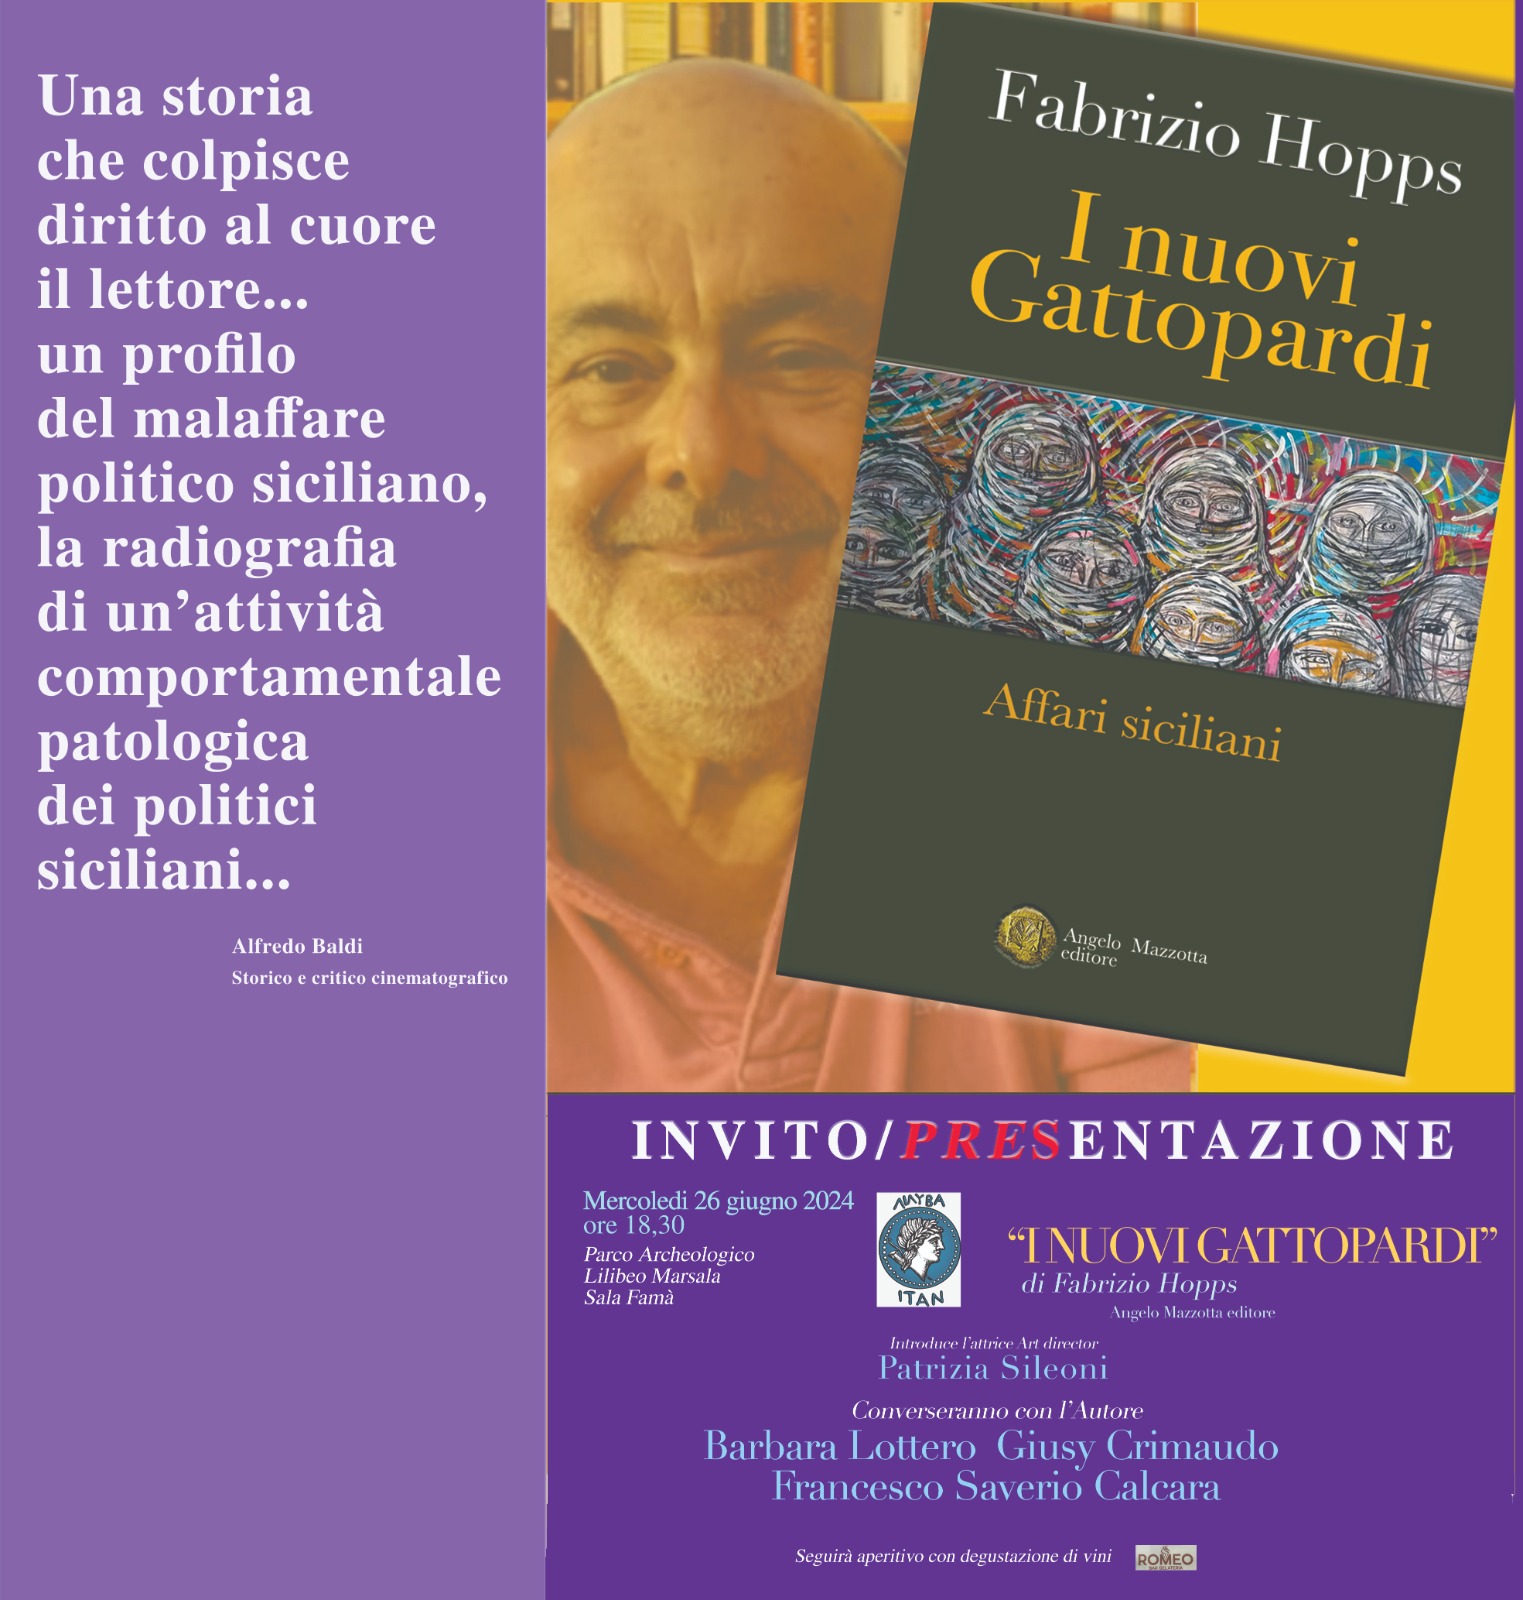 Al Parco Lilibeo si presenta il libro “I nuovi Gattopardi” di Fabrizio Hopps